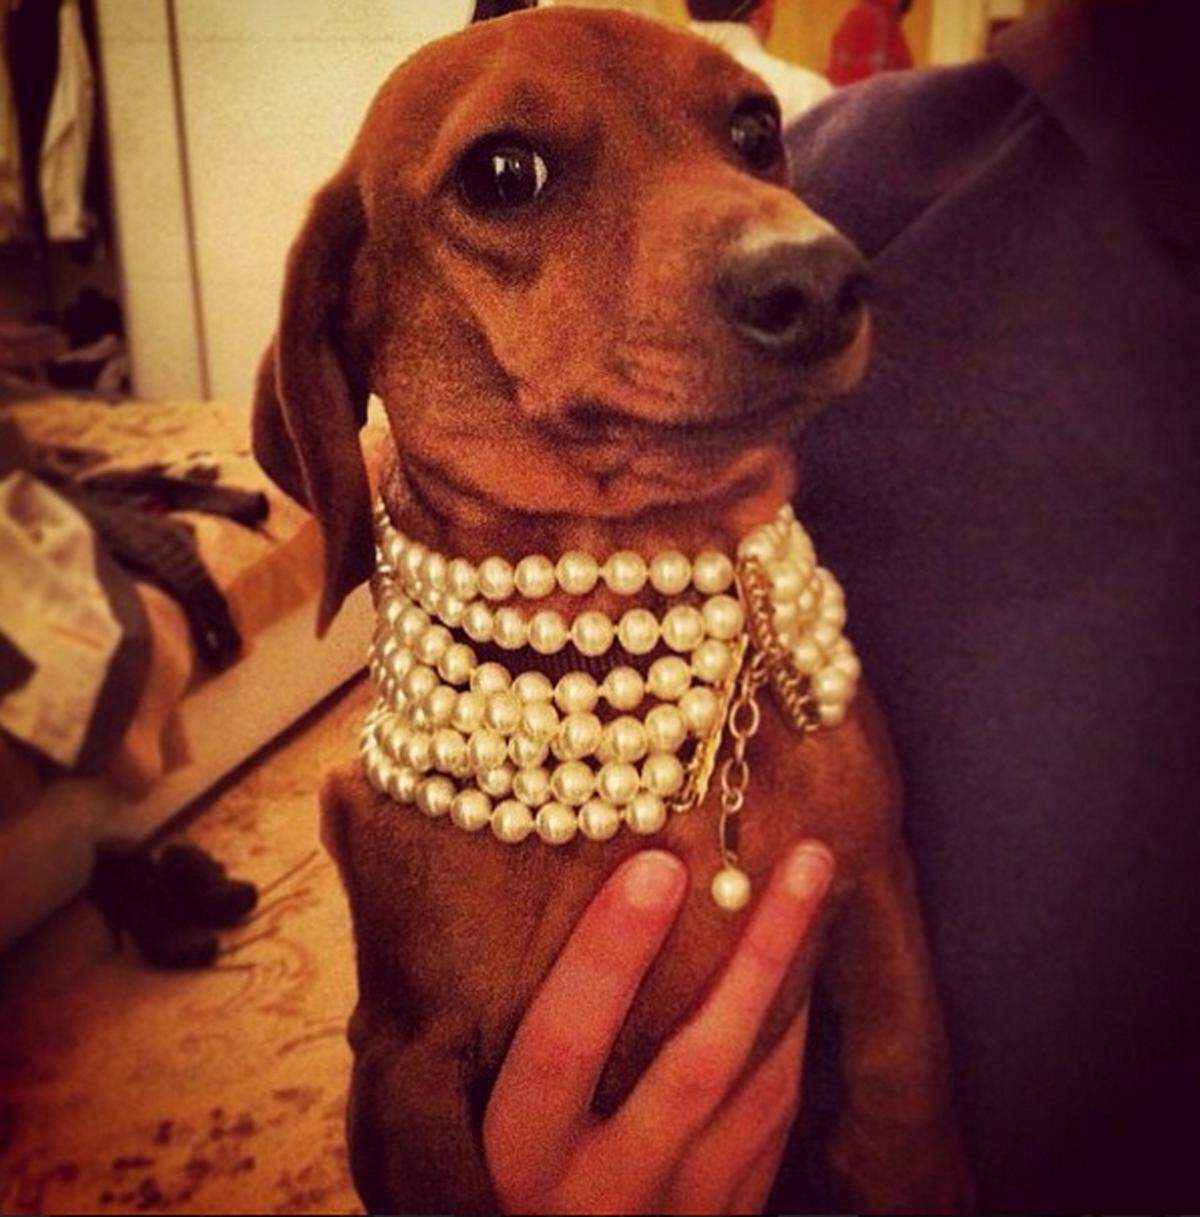 Eine Perlenkette als Hundehalsband trägt dieser Dackel.